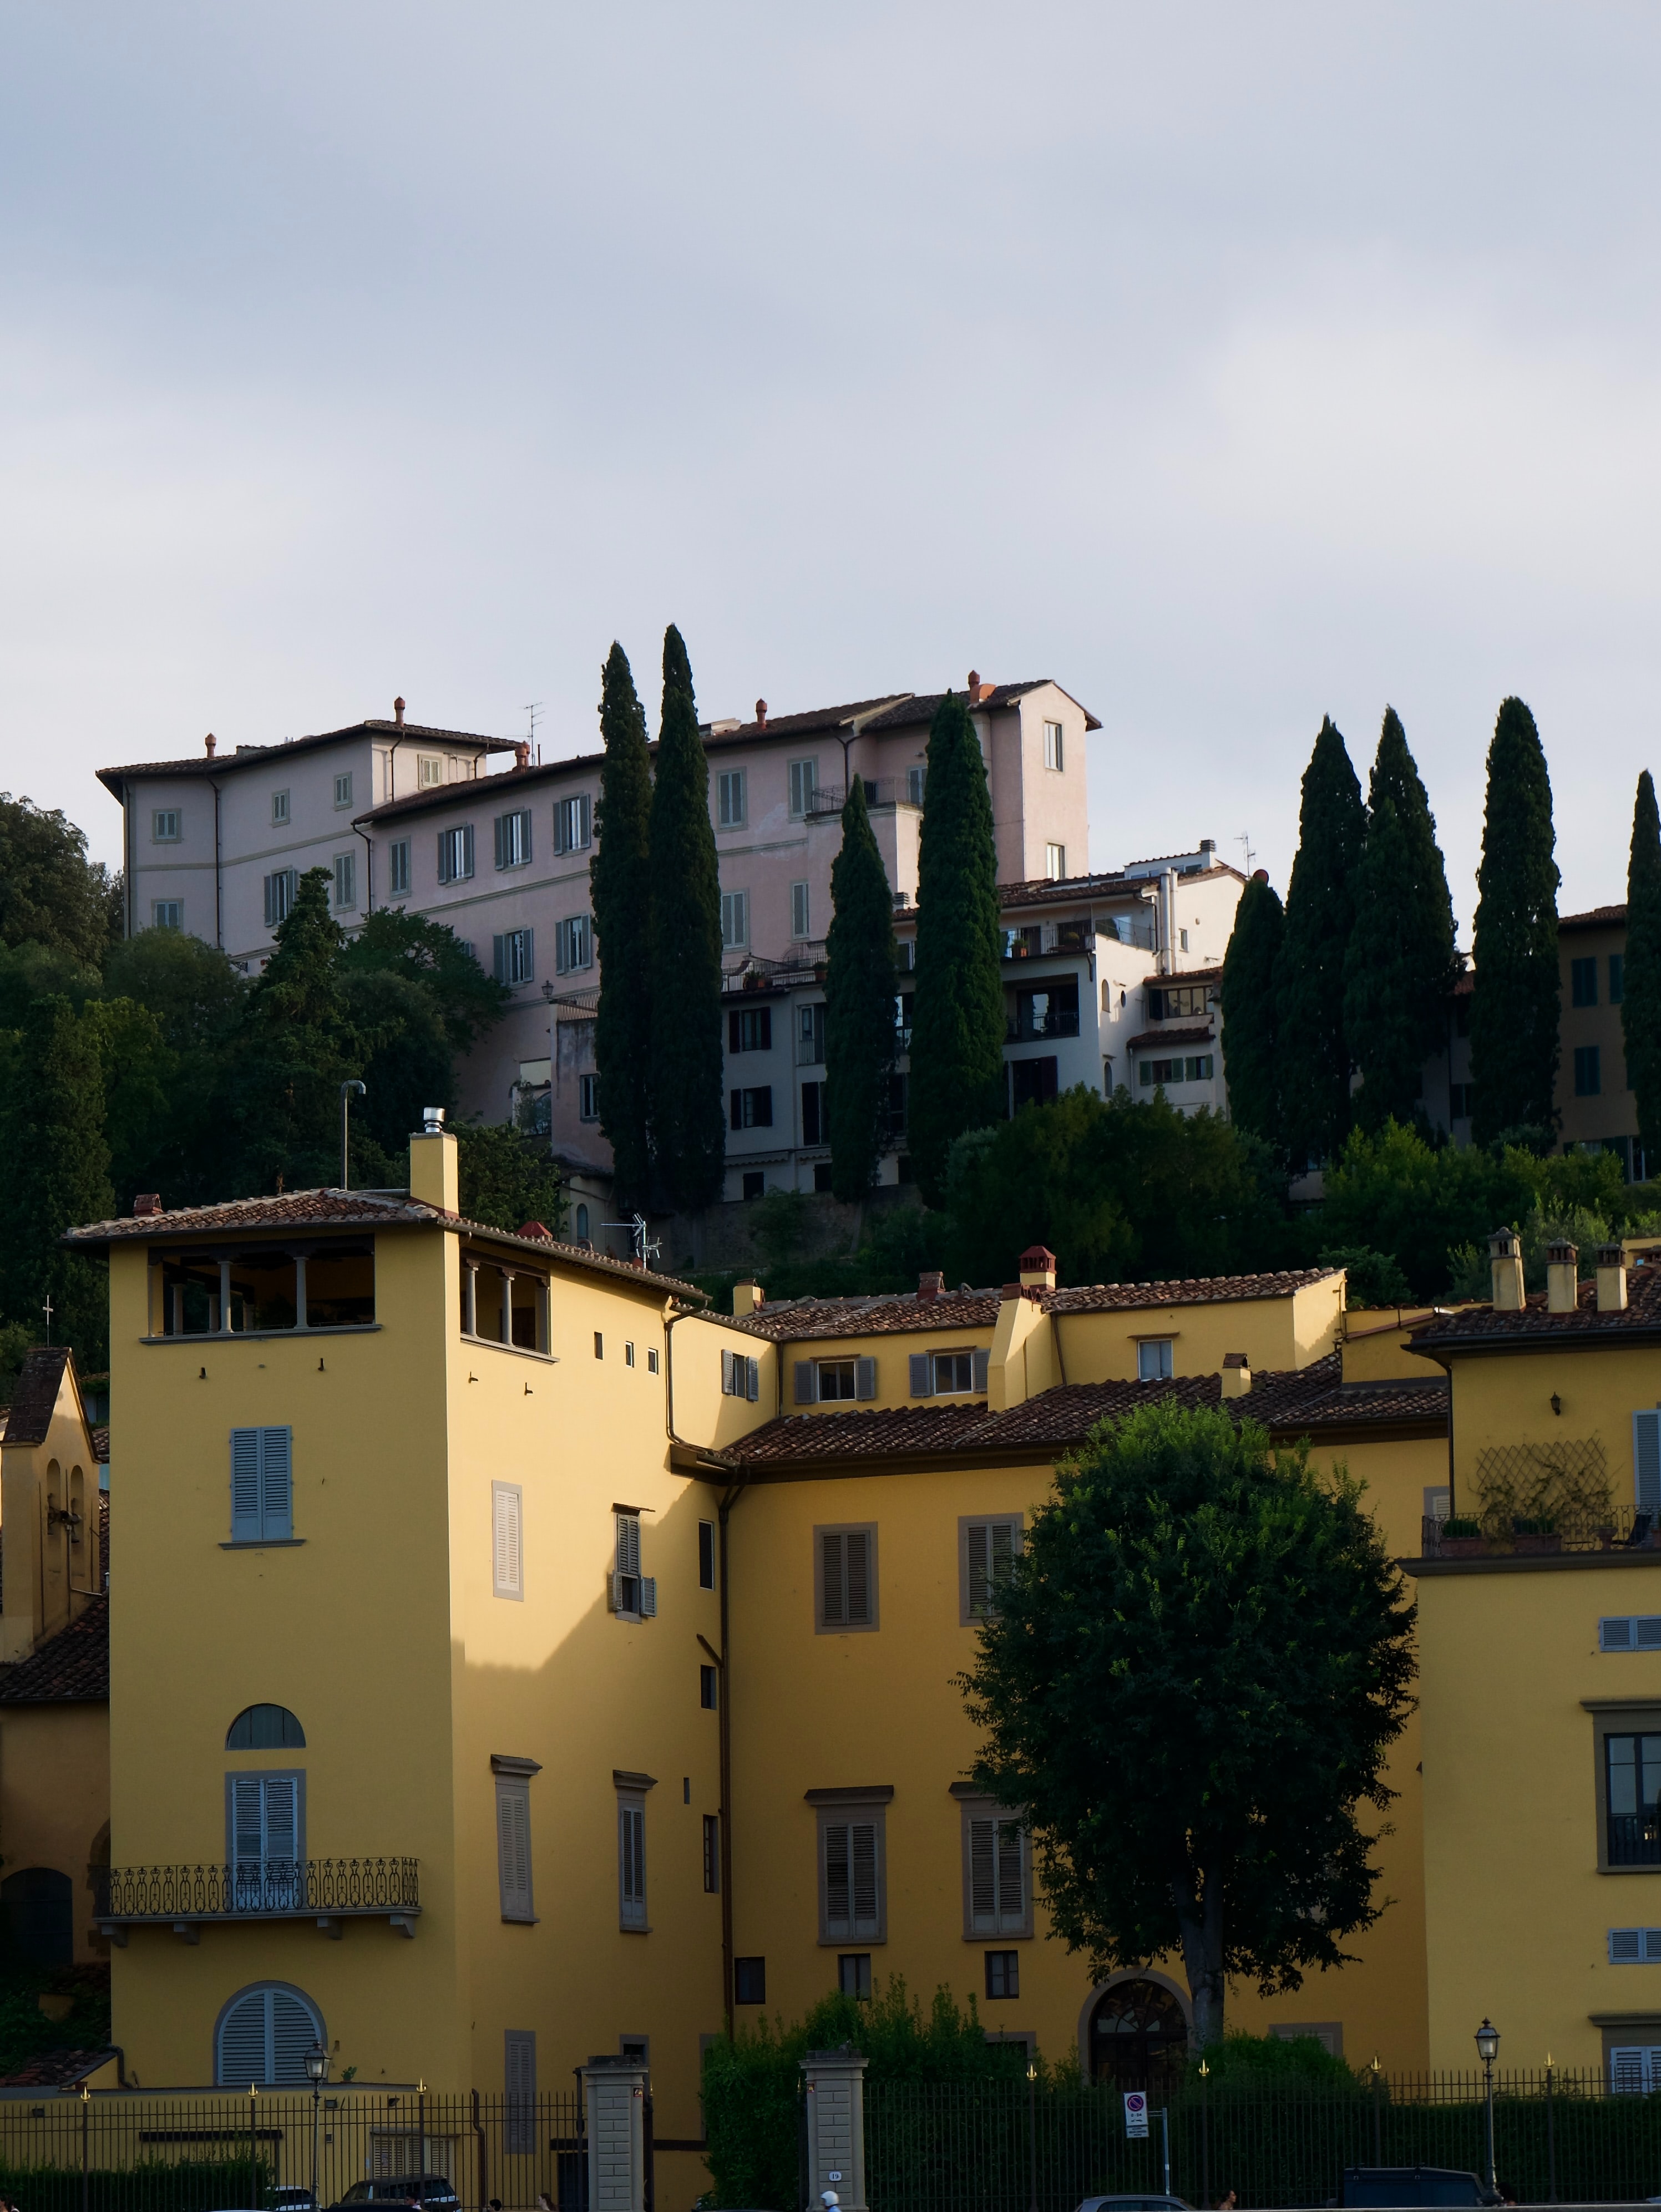 Affitti a Firenze: prezzi e zone